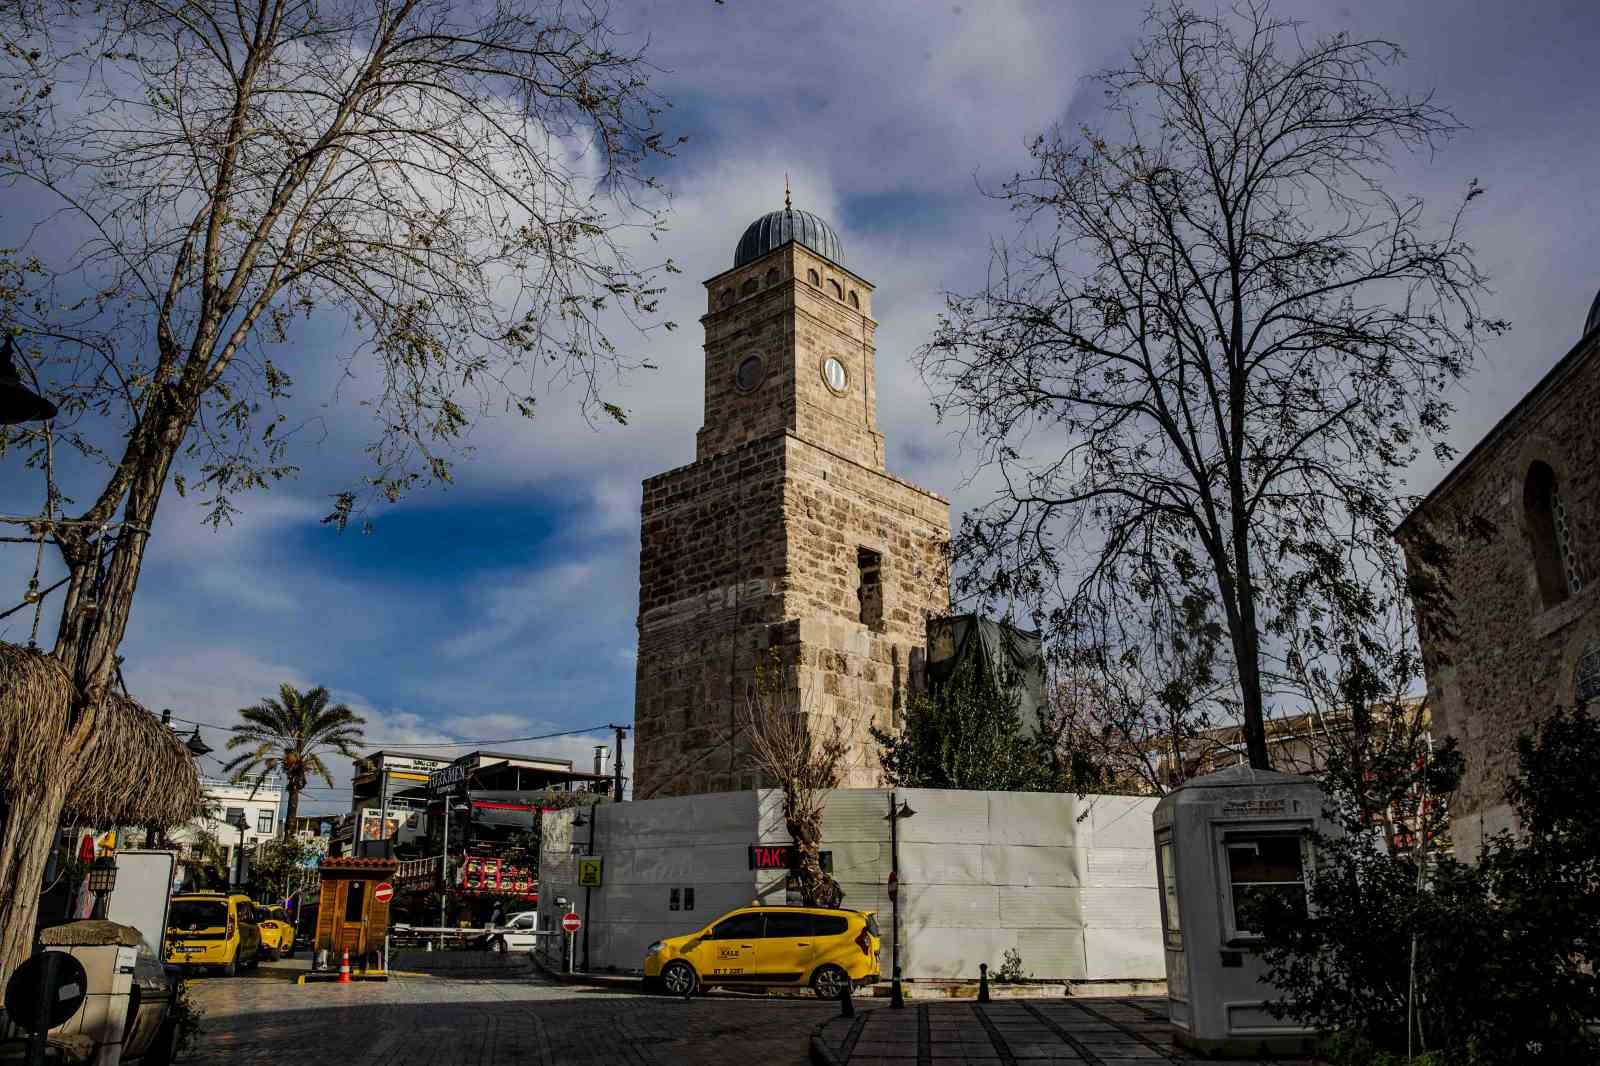 Antalyanin Simgesi Saat Kulesi Saatine Kavusuyor 1 U2Zultjm